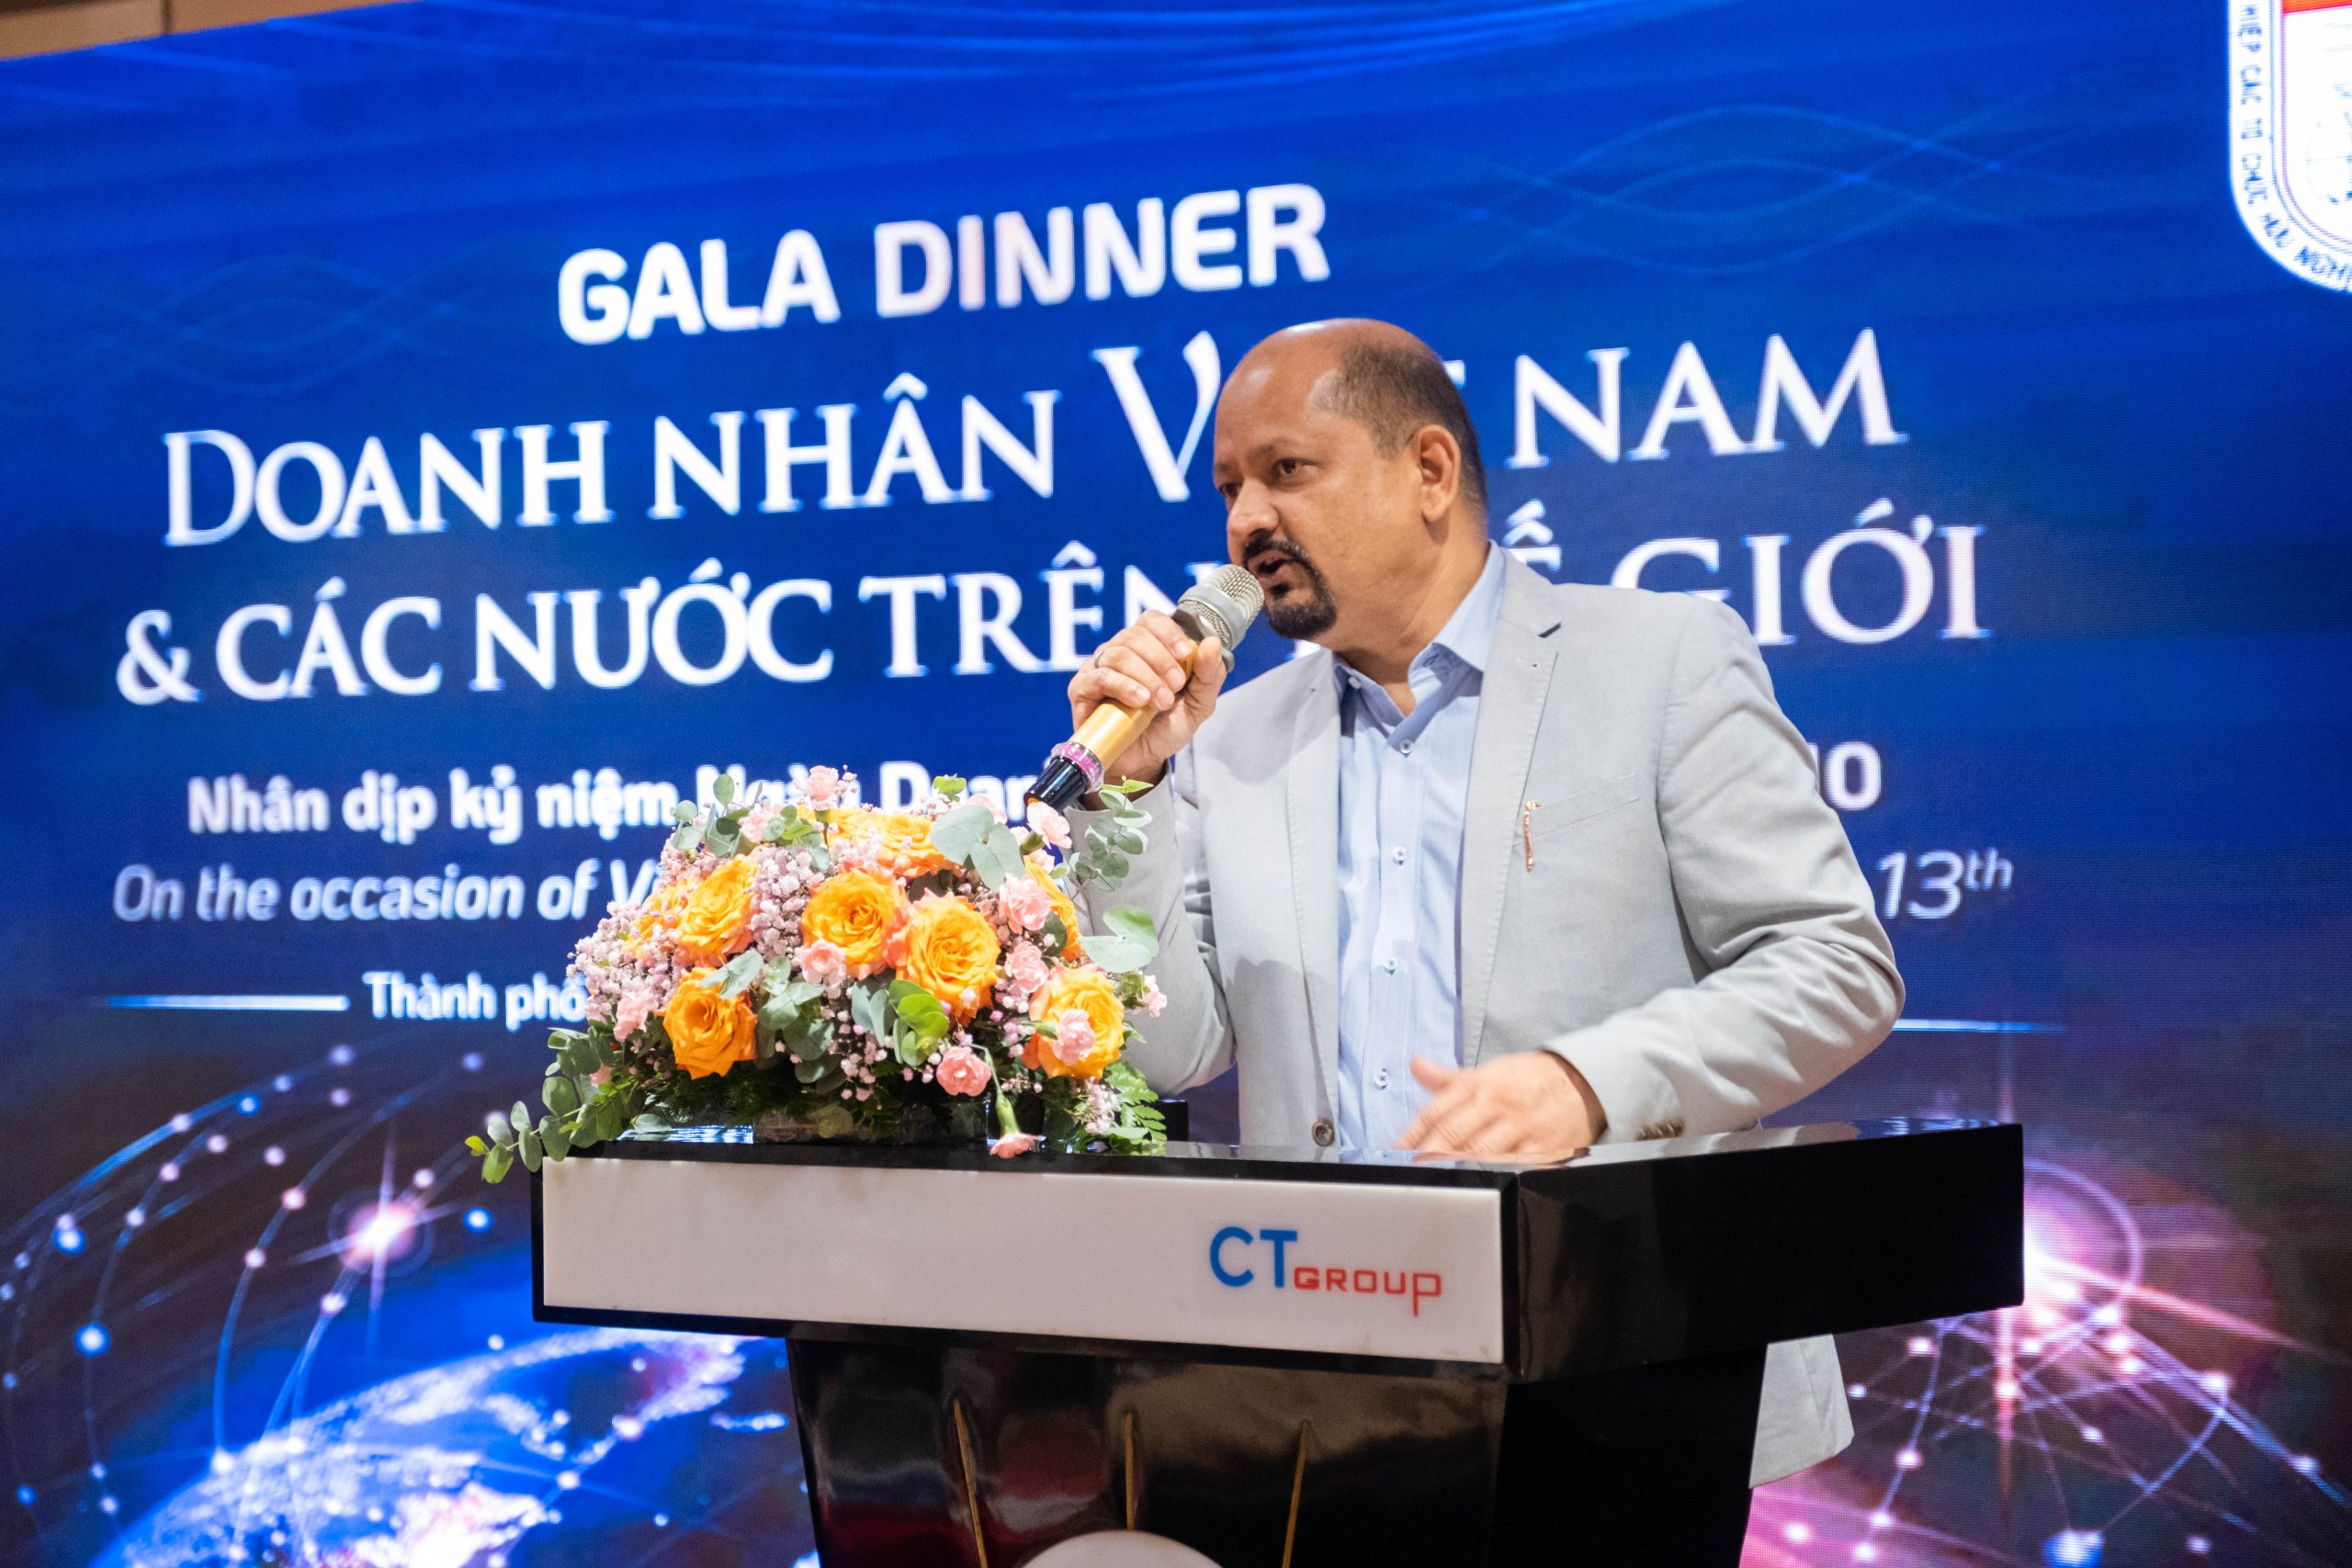 Chủ tịch Hiệp hội doanh Nghiệp Ấn độ tại Việt Nam (InCham) cảm ơn CT Group đã tạo cơ hội giao lưu giữa các doanh nhân